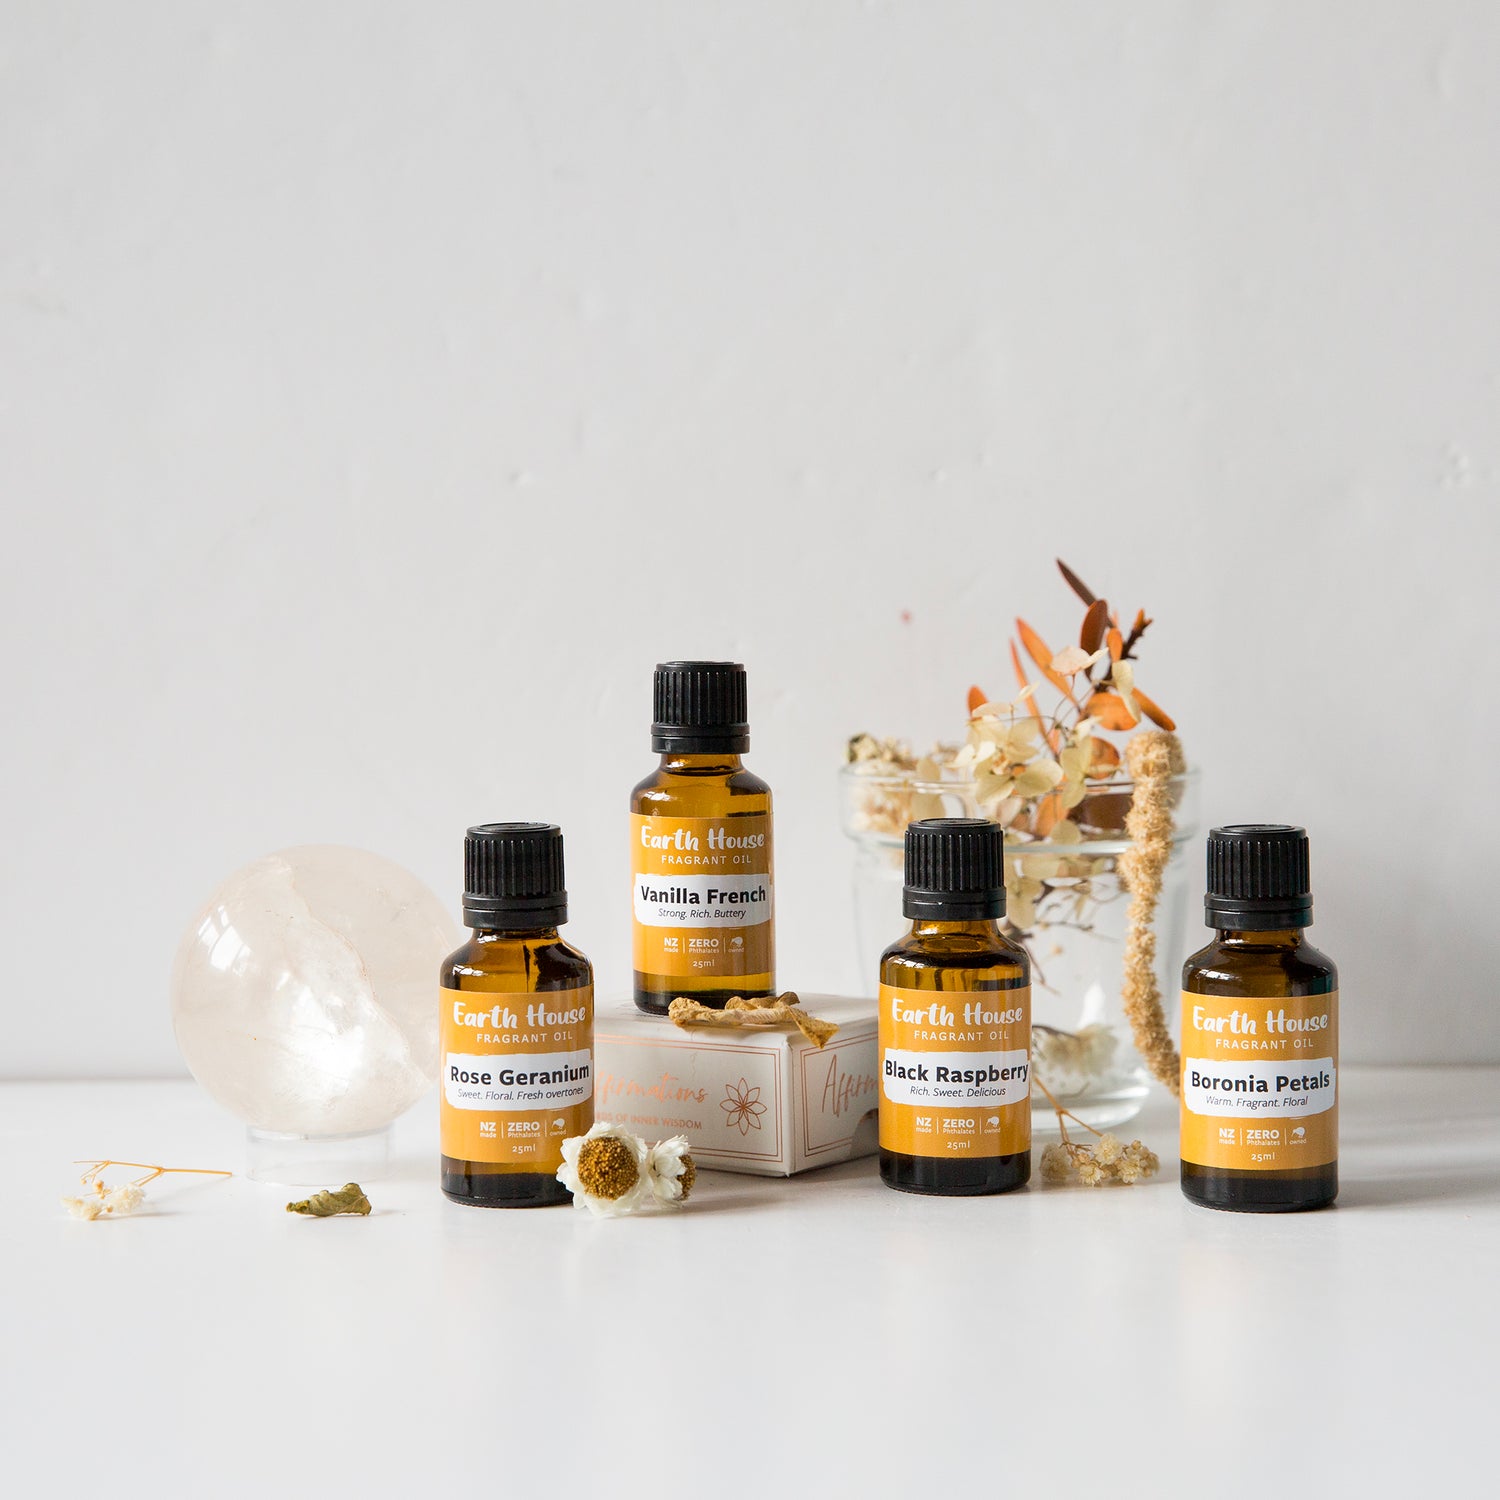 A group of Earth House fragrance oils